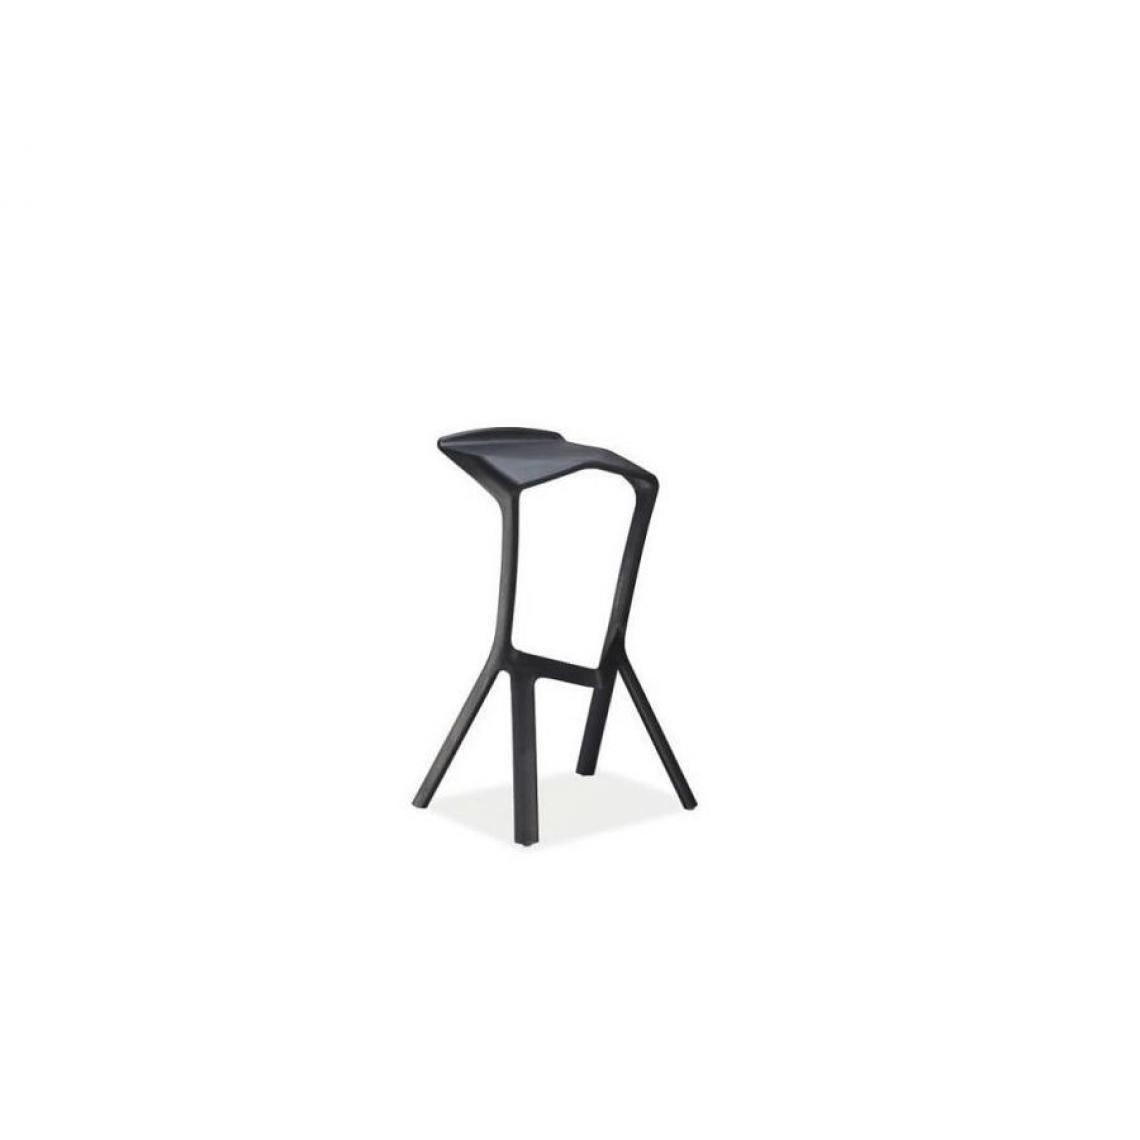 Hucoco - VOLK | Tabouret de bar style minimaliste/loft | Dimension 82x50x29 cm | Matière PP | Chaise de bar | Chaise haute cusine - Noir - Tabourets